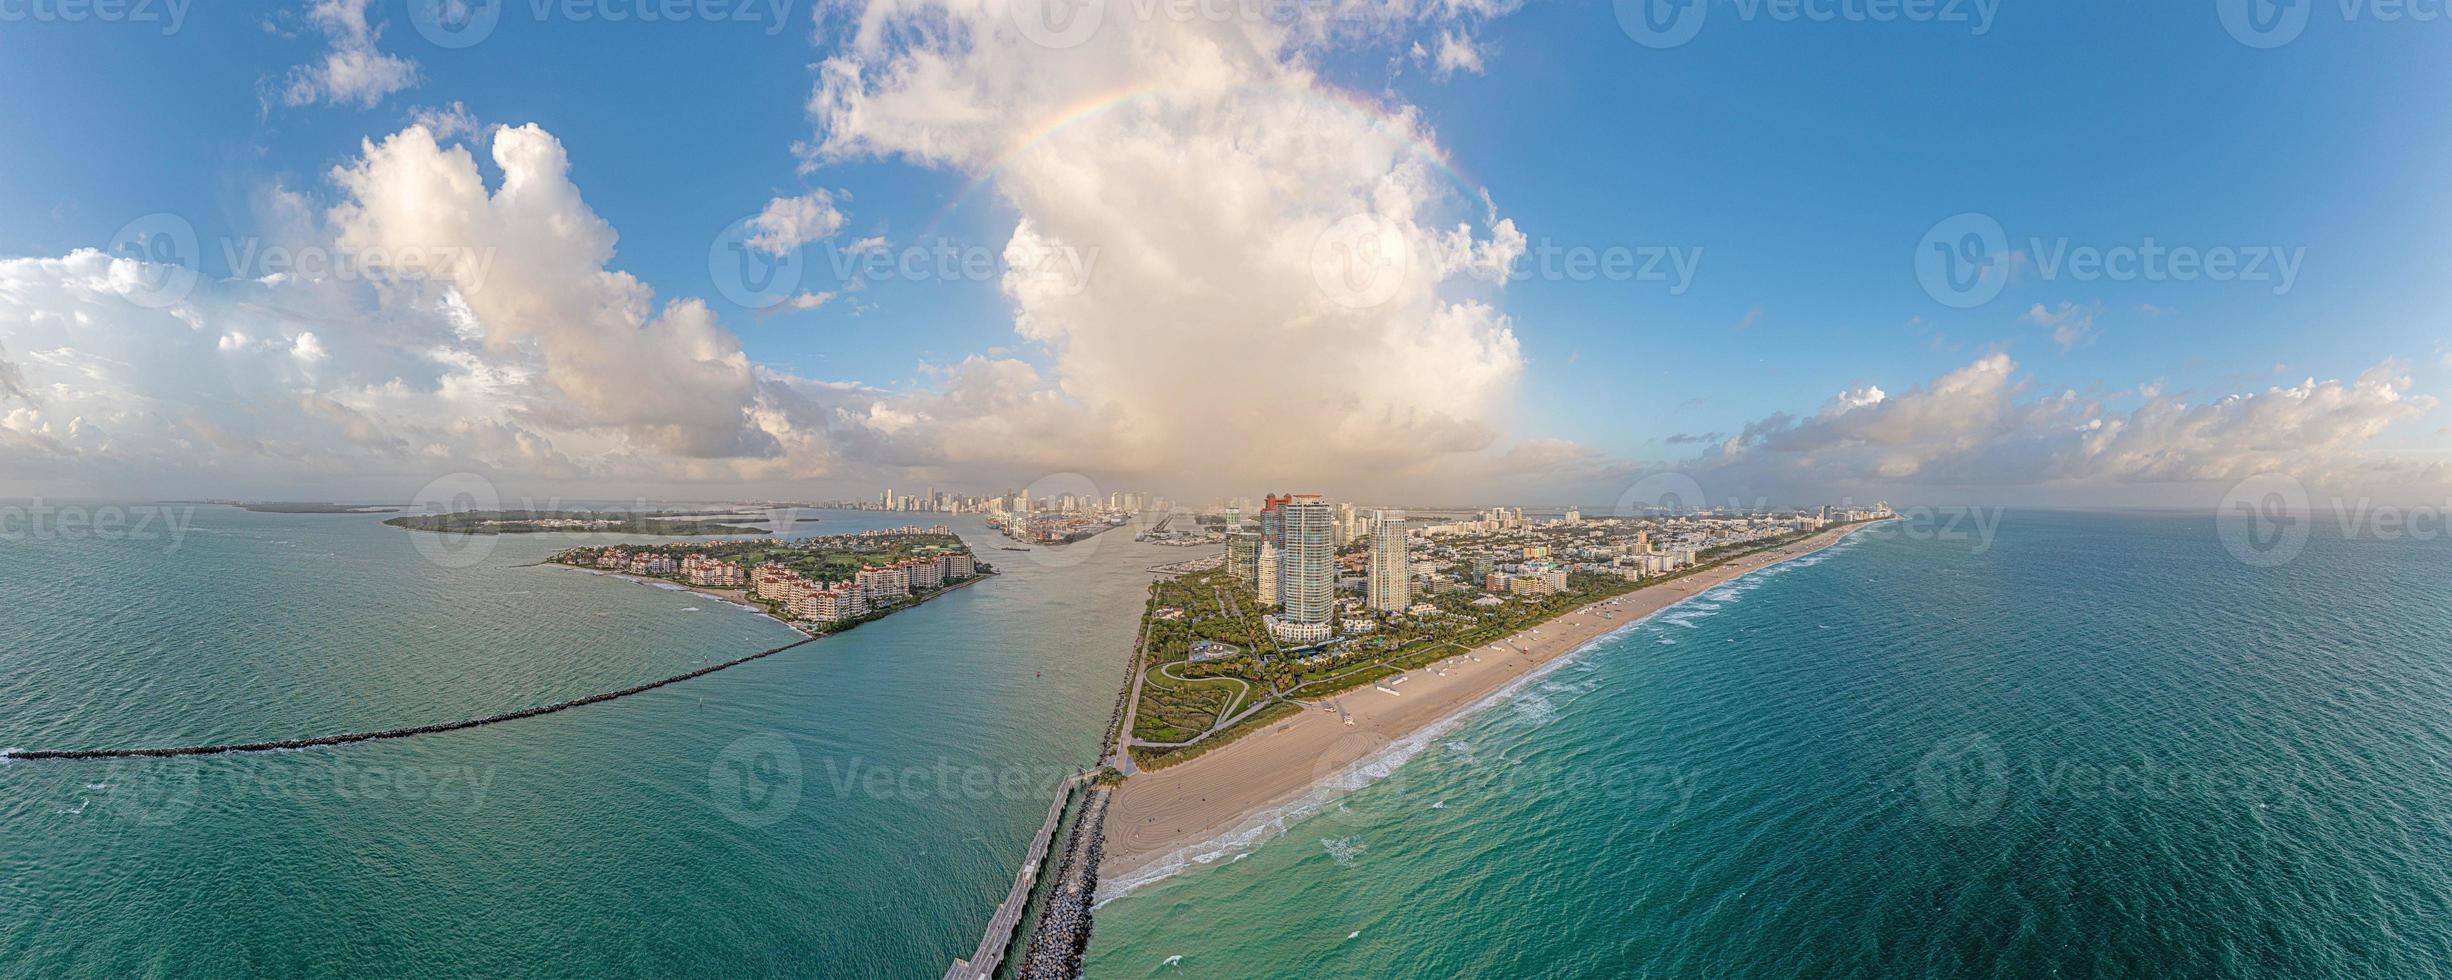 panorama de drones sobre el horizonte de la playa de miami al atardecer foto